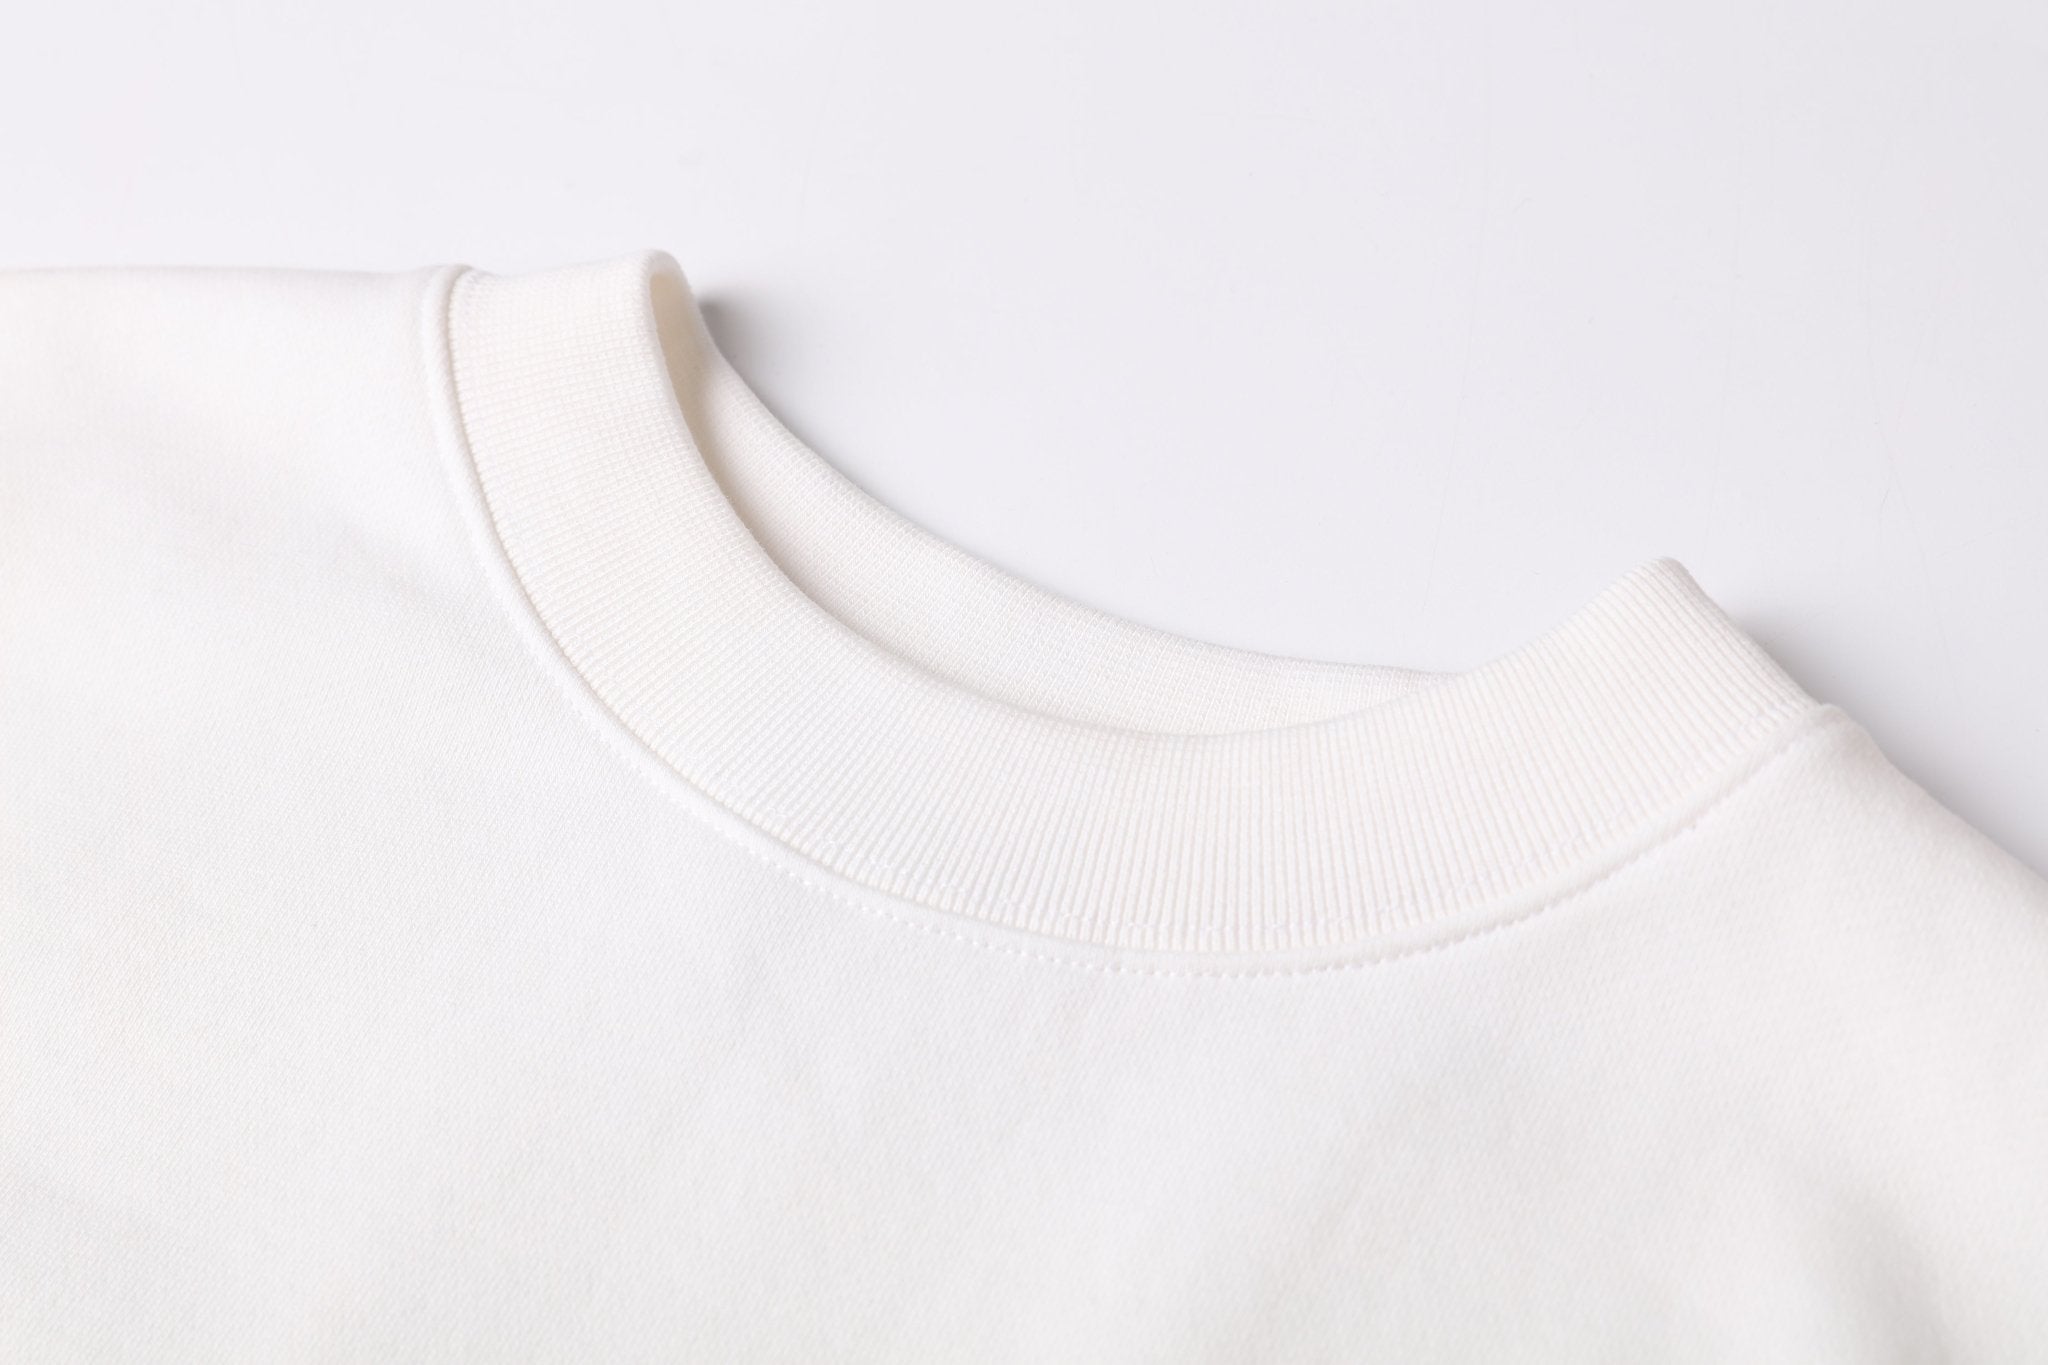 WE11DONE Off-White New Logo Sweatshirt | MADA IN CHINA